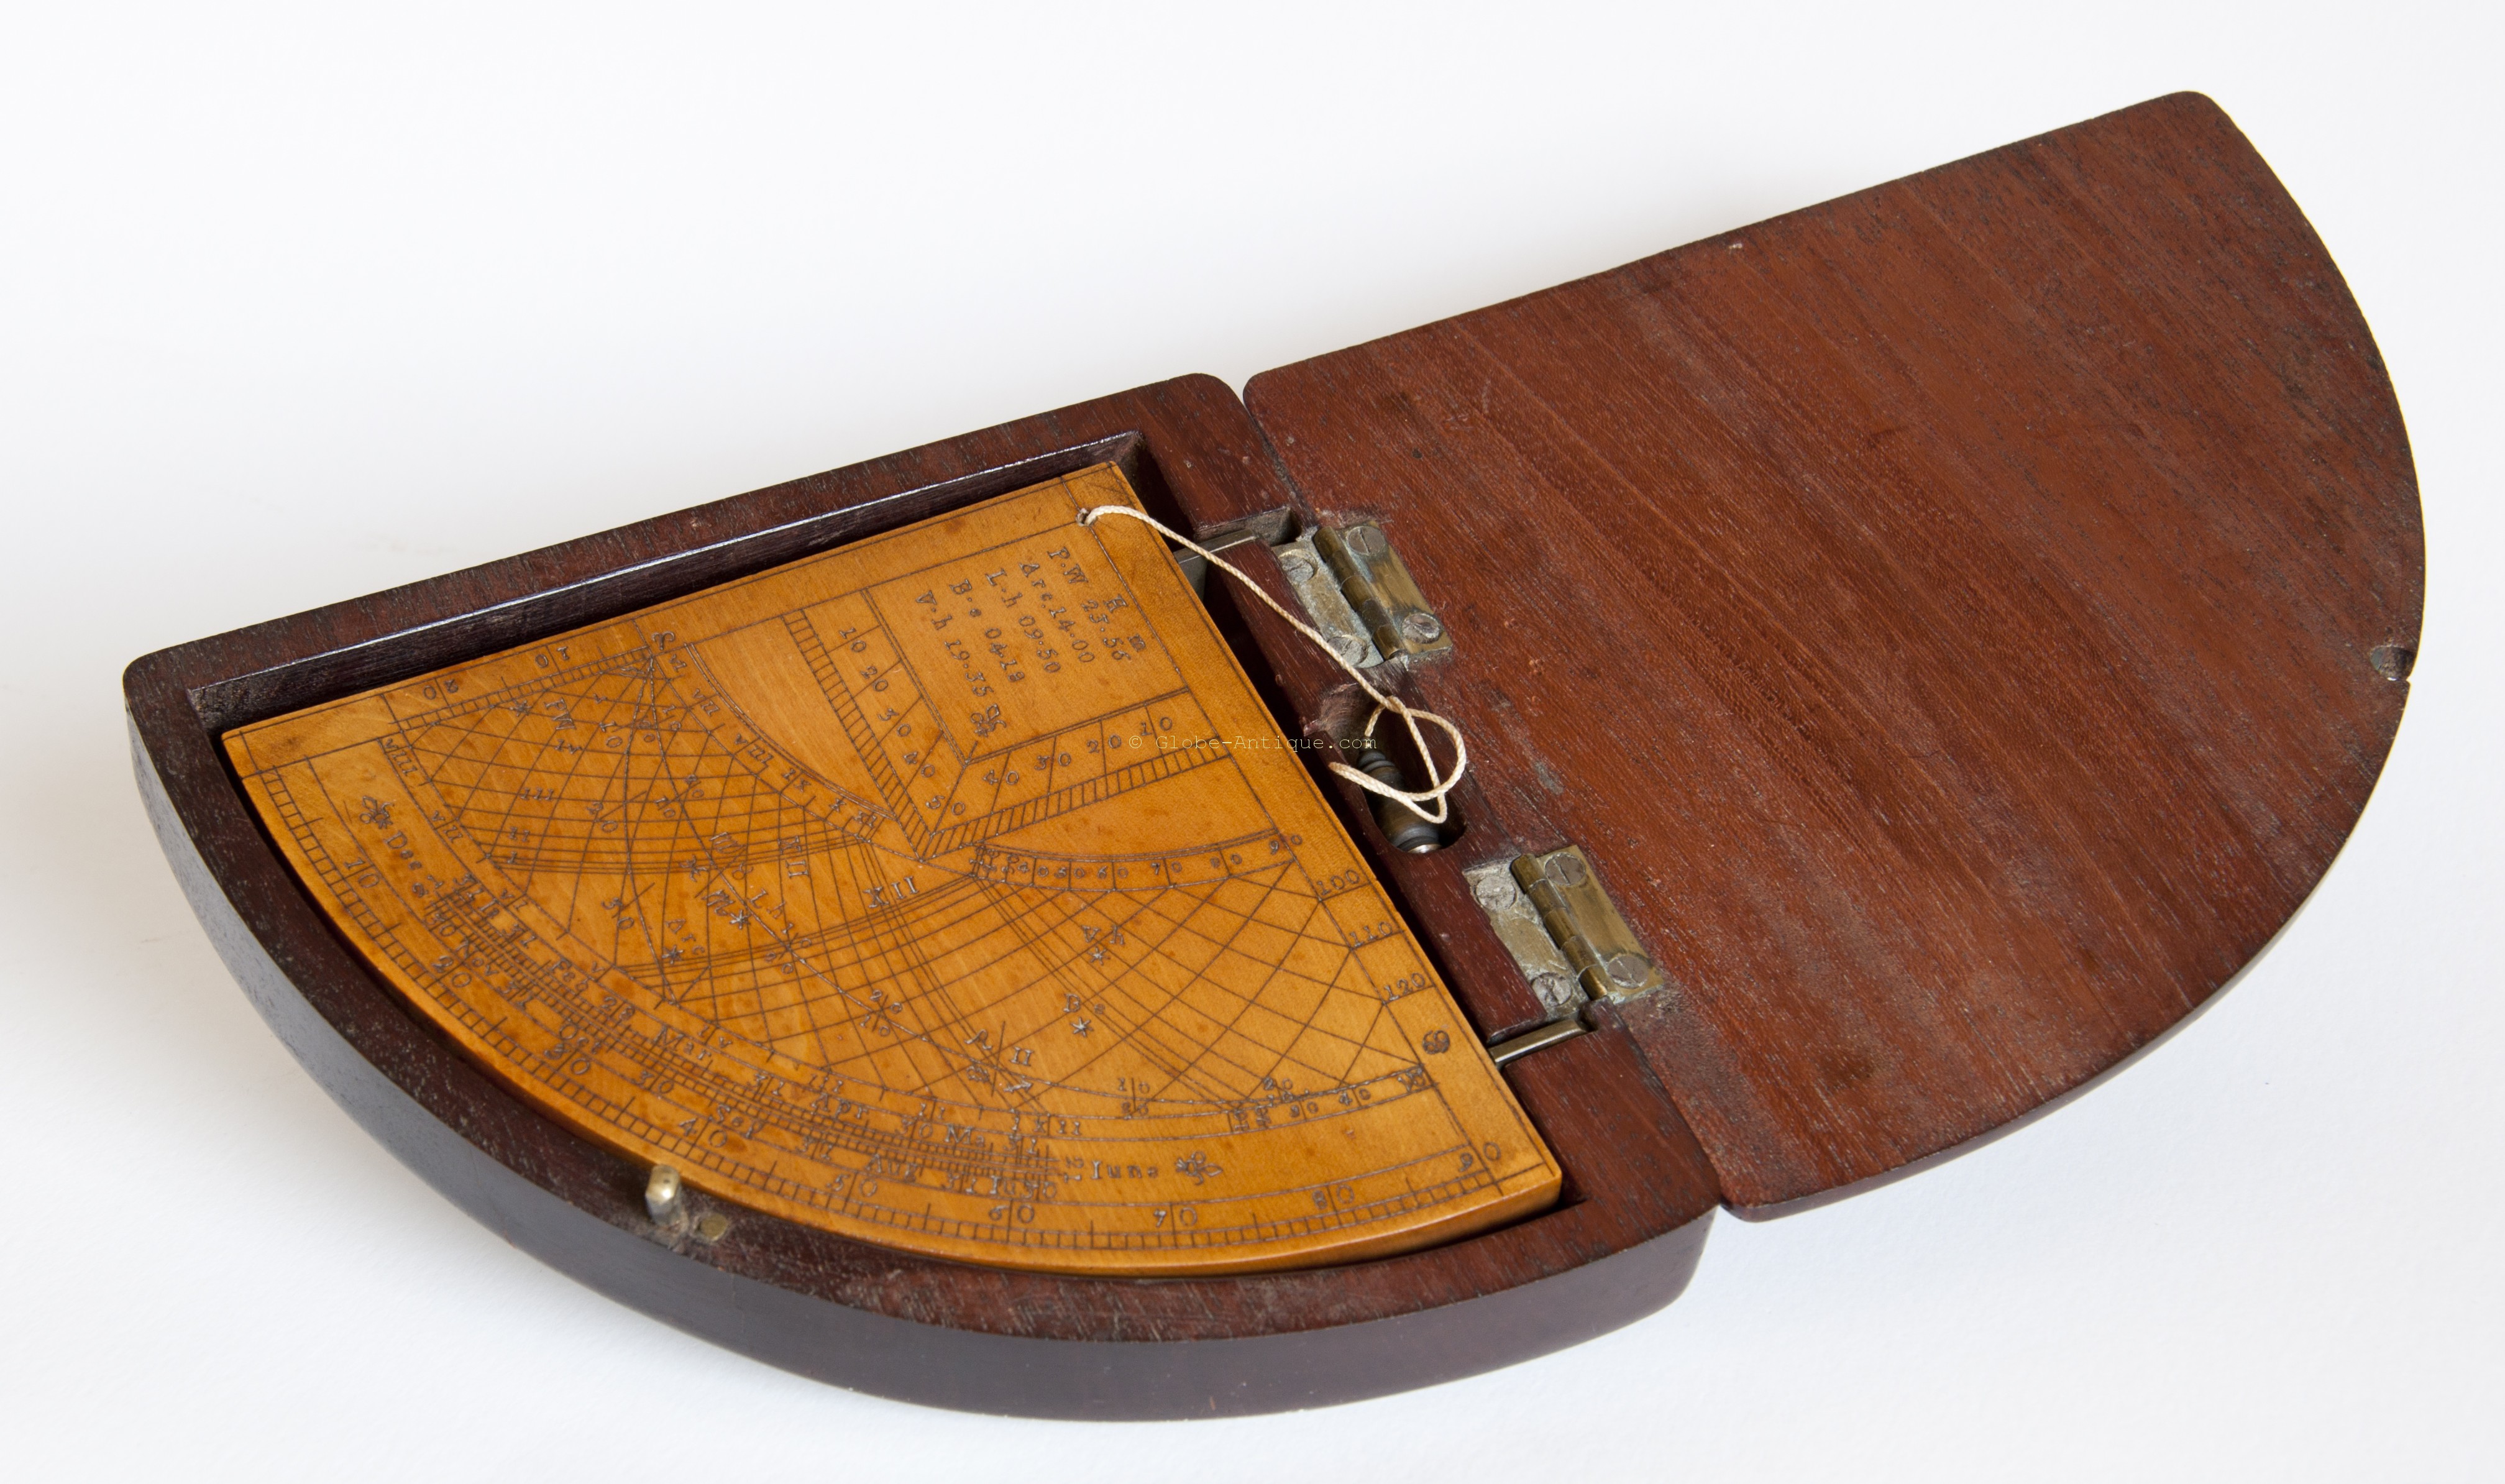 Antique Nautical Instruments Antique Scientific And Nautical Instruments 